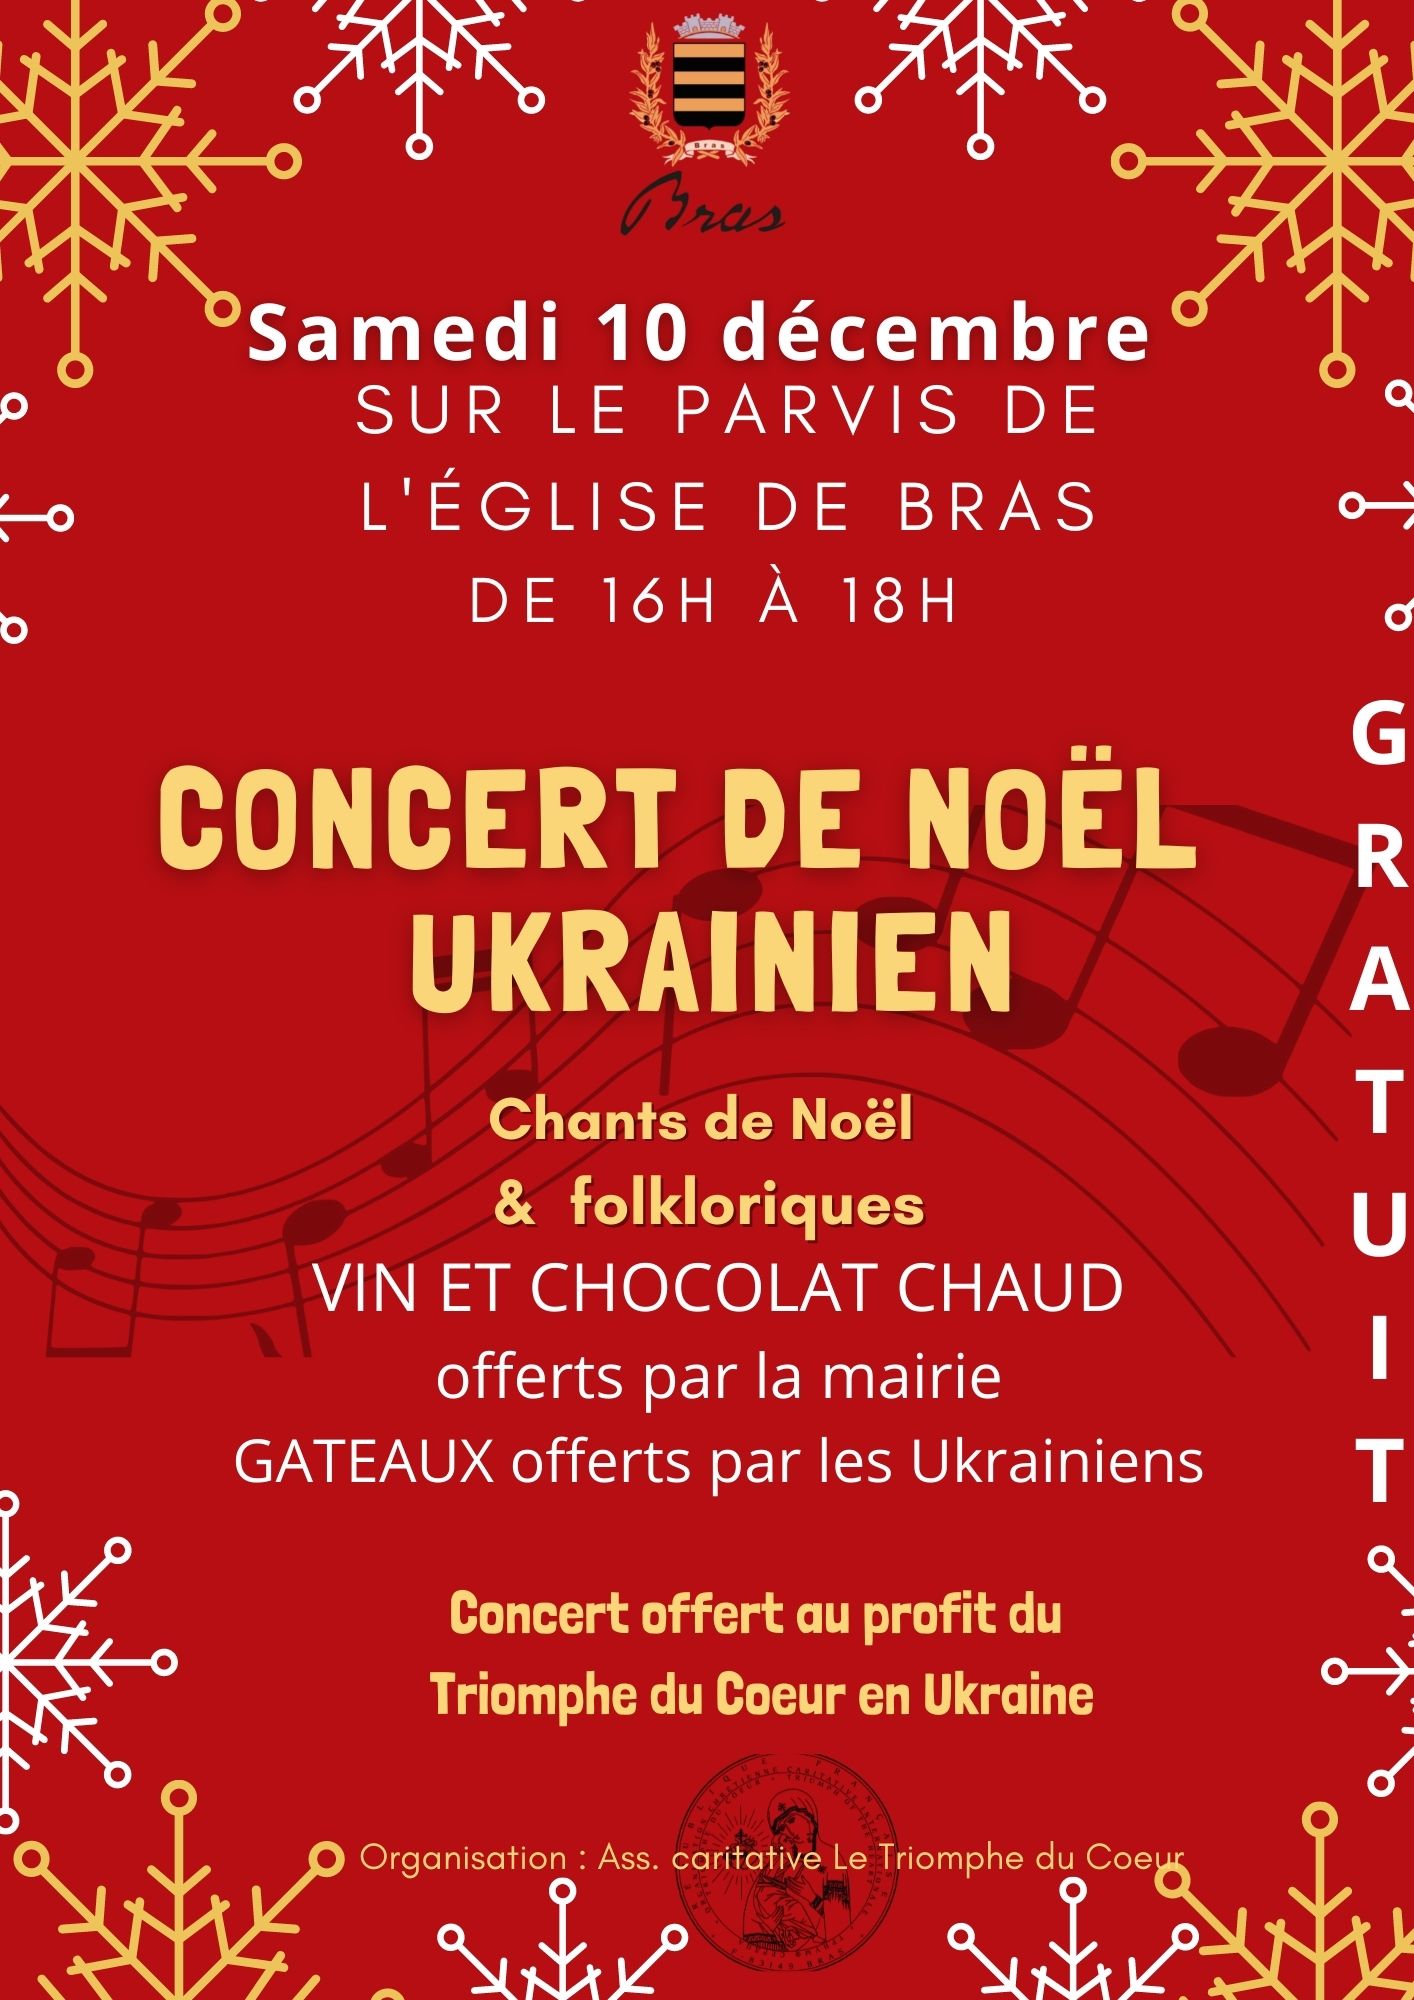 Affiche concert de Noël ukrainien à Bras